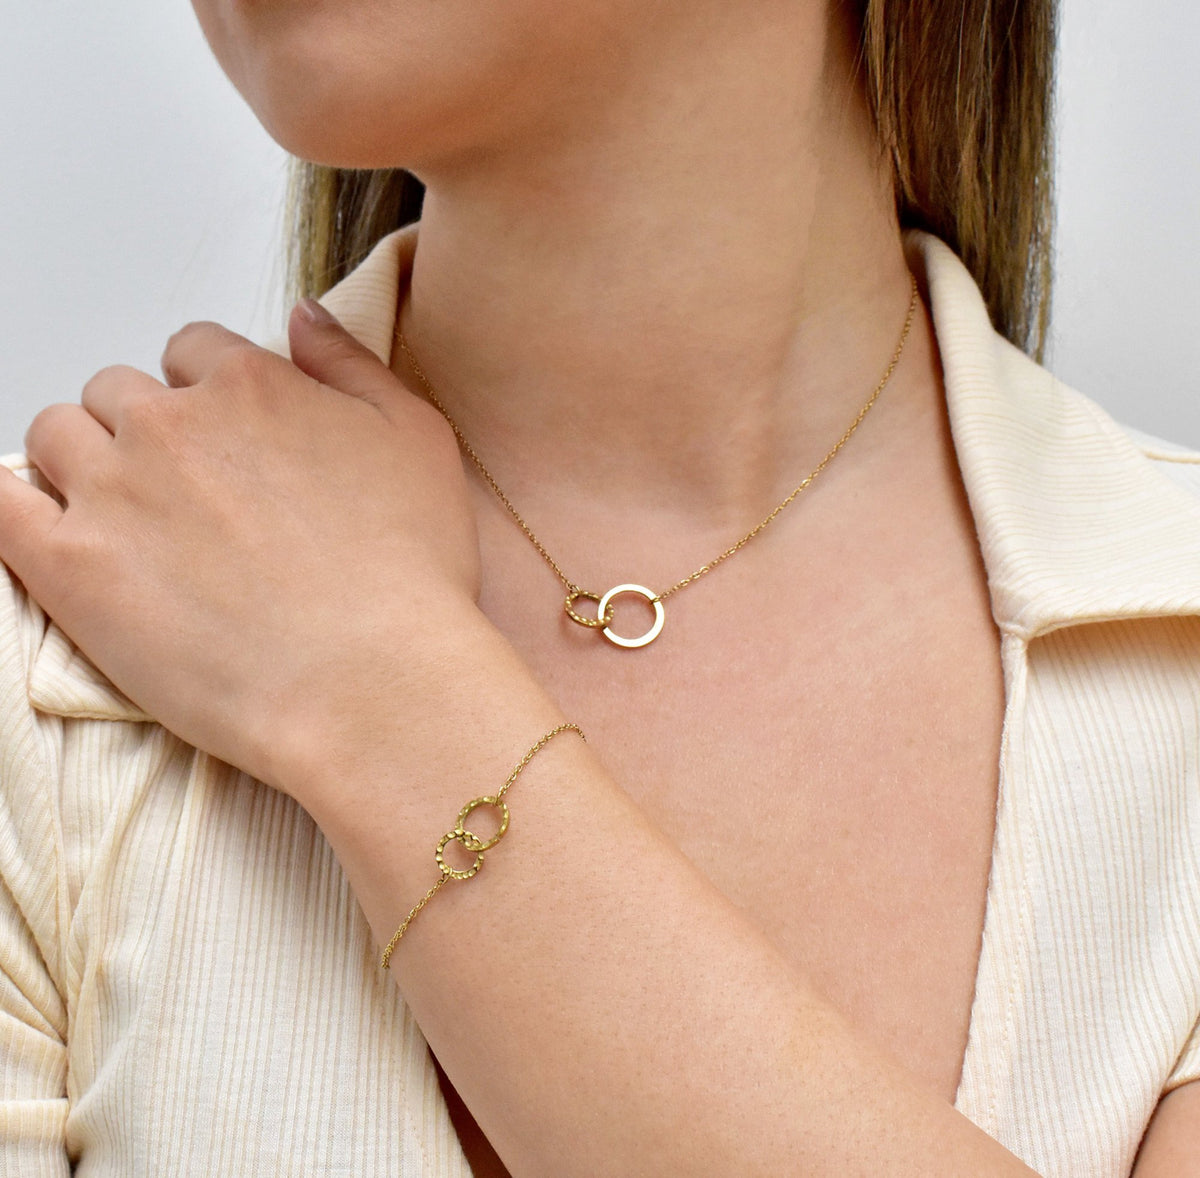 dainty gold unity bracelet and necklace set